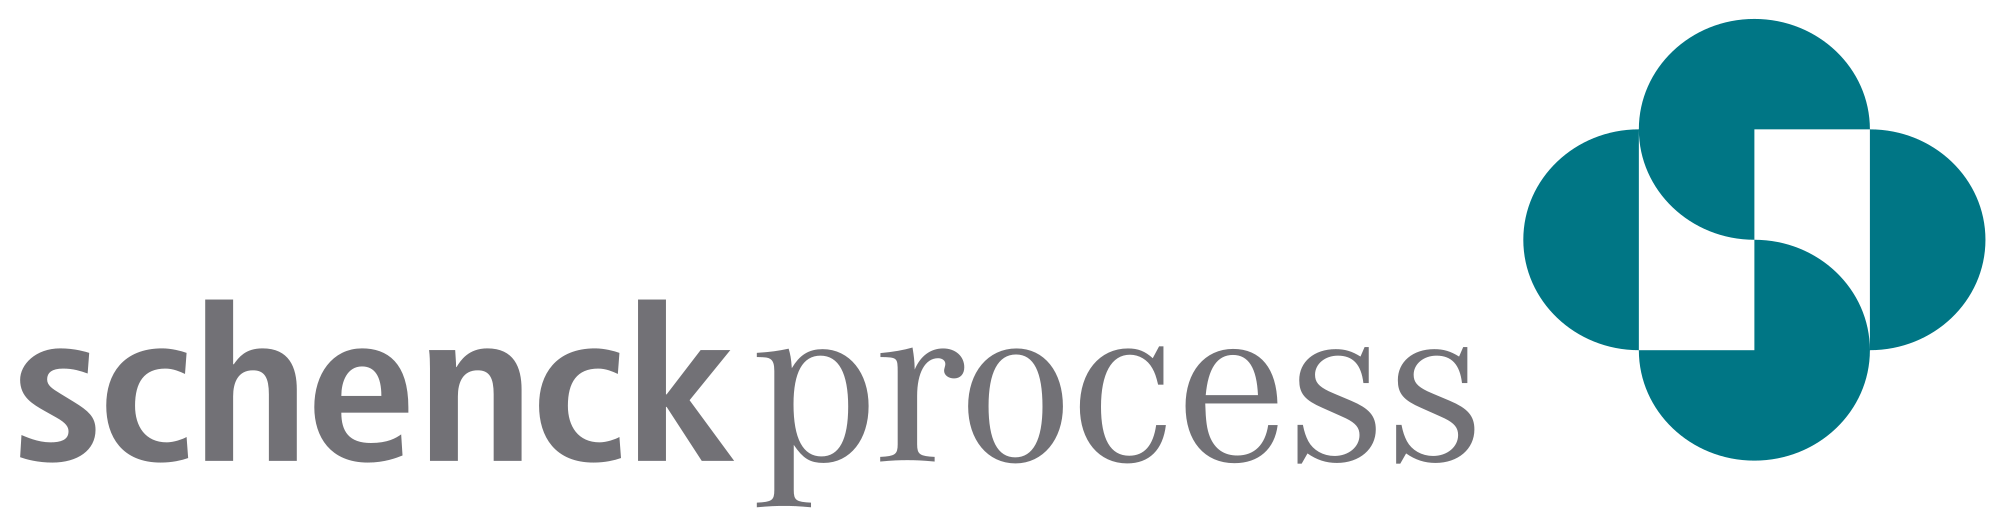 Schenck Process Europe GmbH